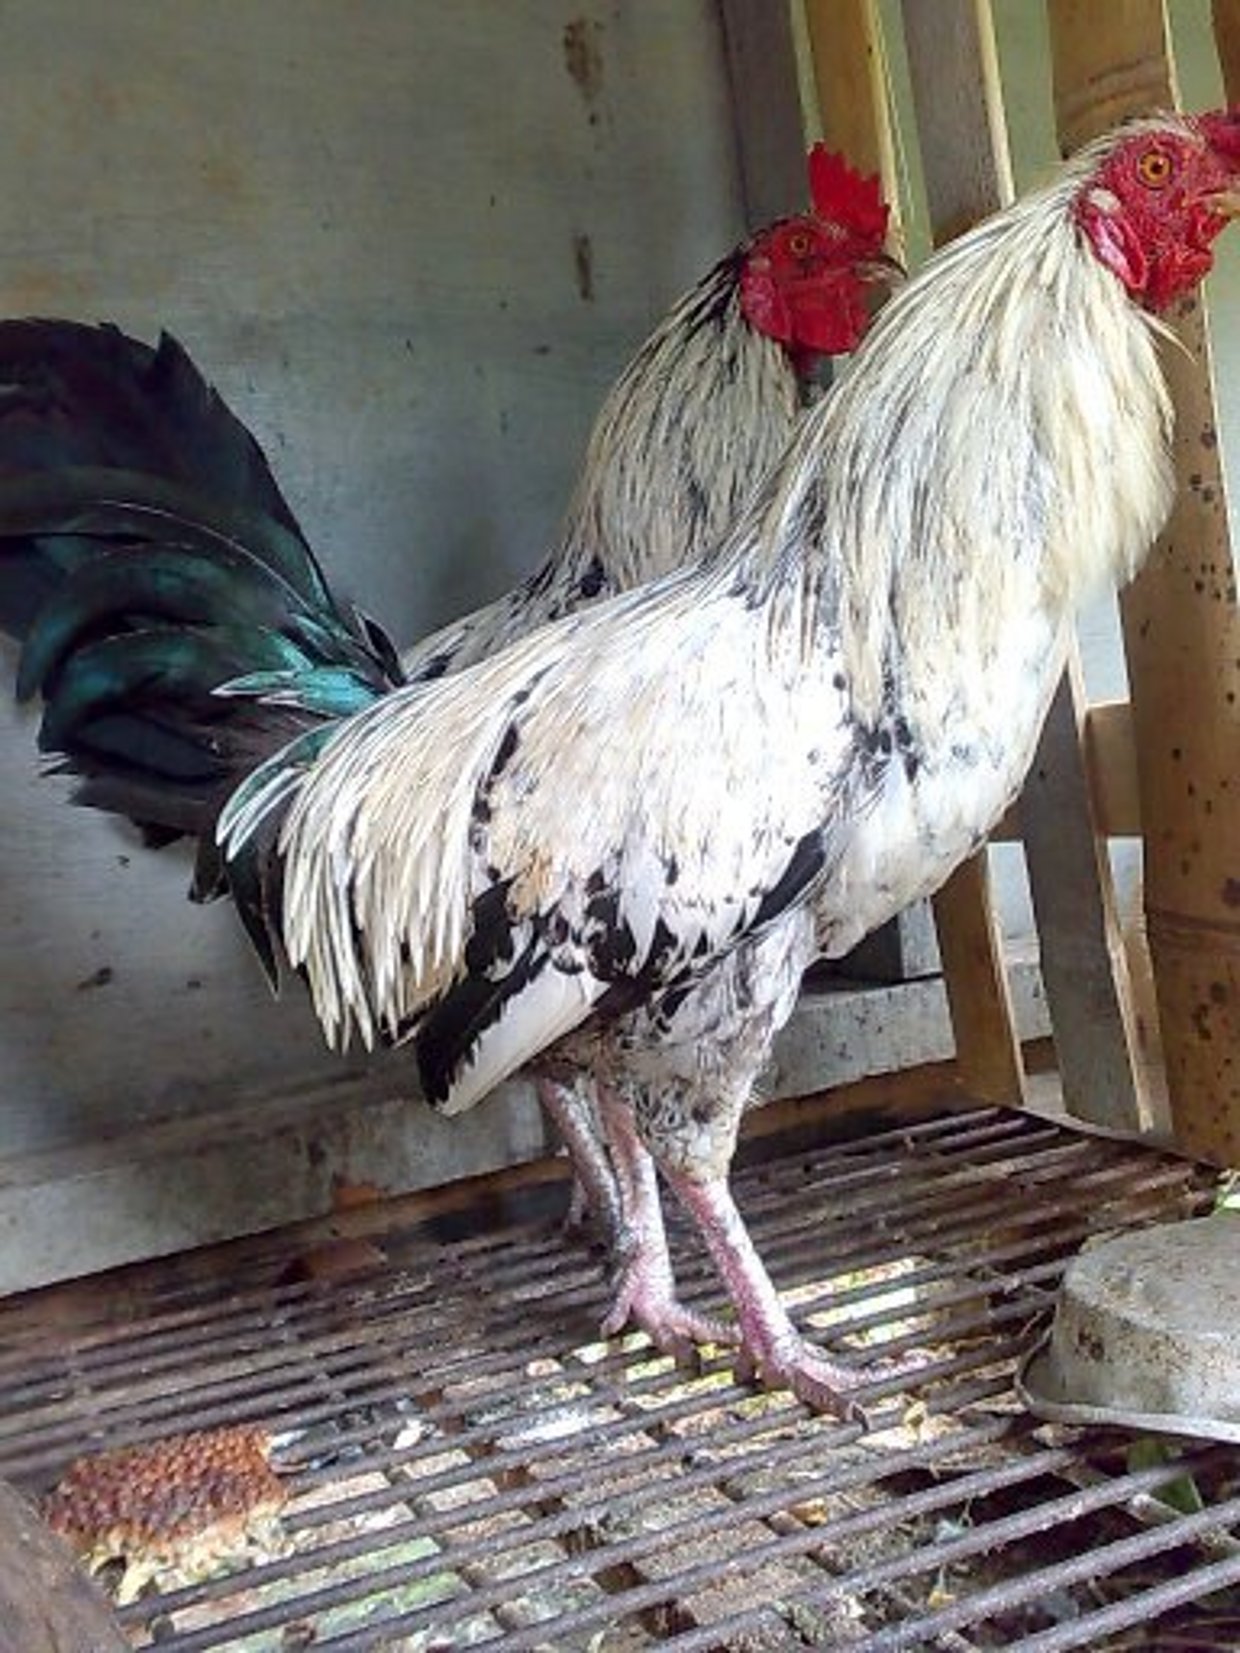 Peternak Berencana Musnahkan 6 Juta Bibit Ayam Karena Harga Anjlok